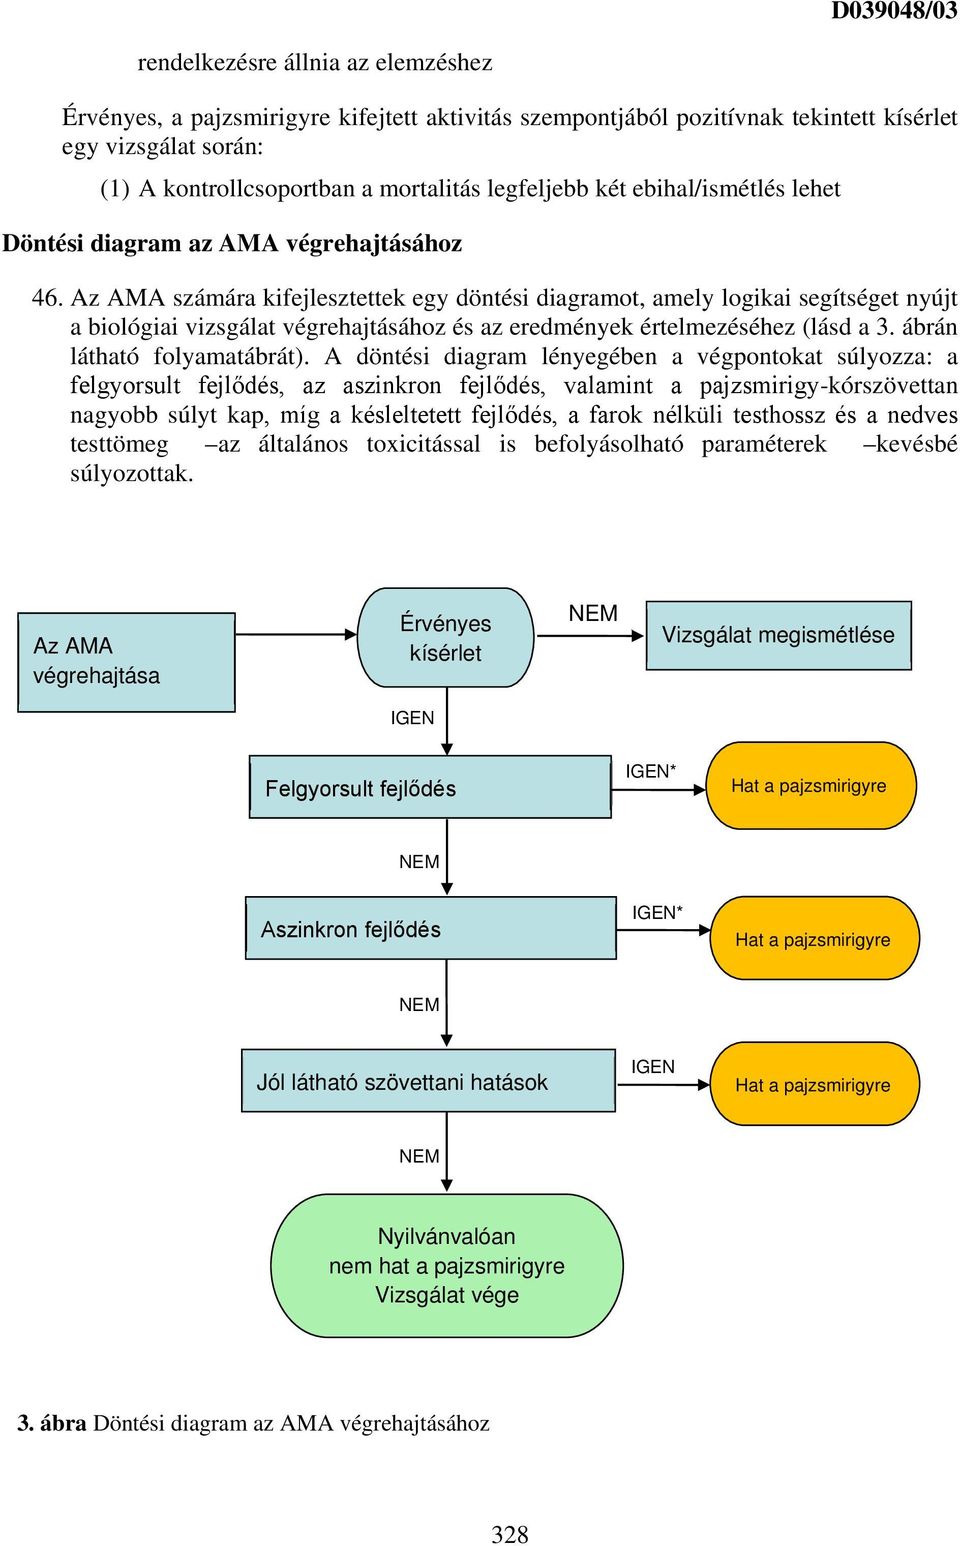 Az AMA számára kifejlesztettek egy döntési diagramot, amely logikai segítséget nyújt a biológiai vizsgálat végrehajtásához és az eredmények értelmezéséhez (lásd a 3. ábrán látható folyamatábrát).